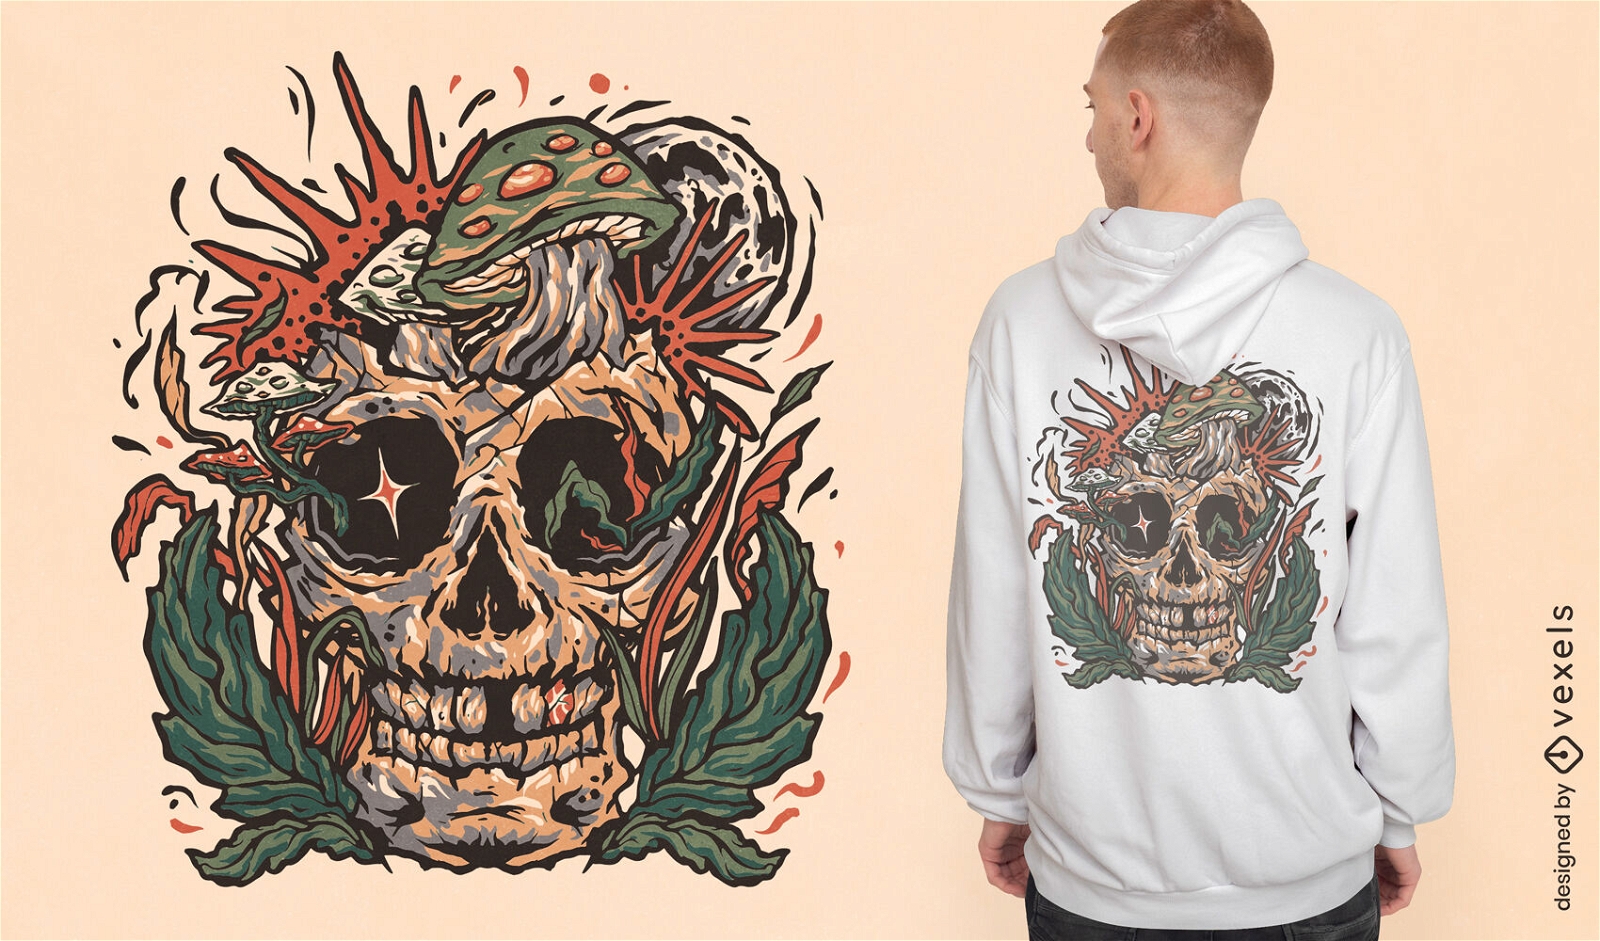 Mushroom skull t-shirt design